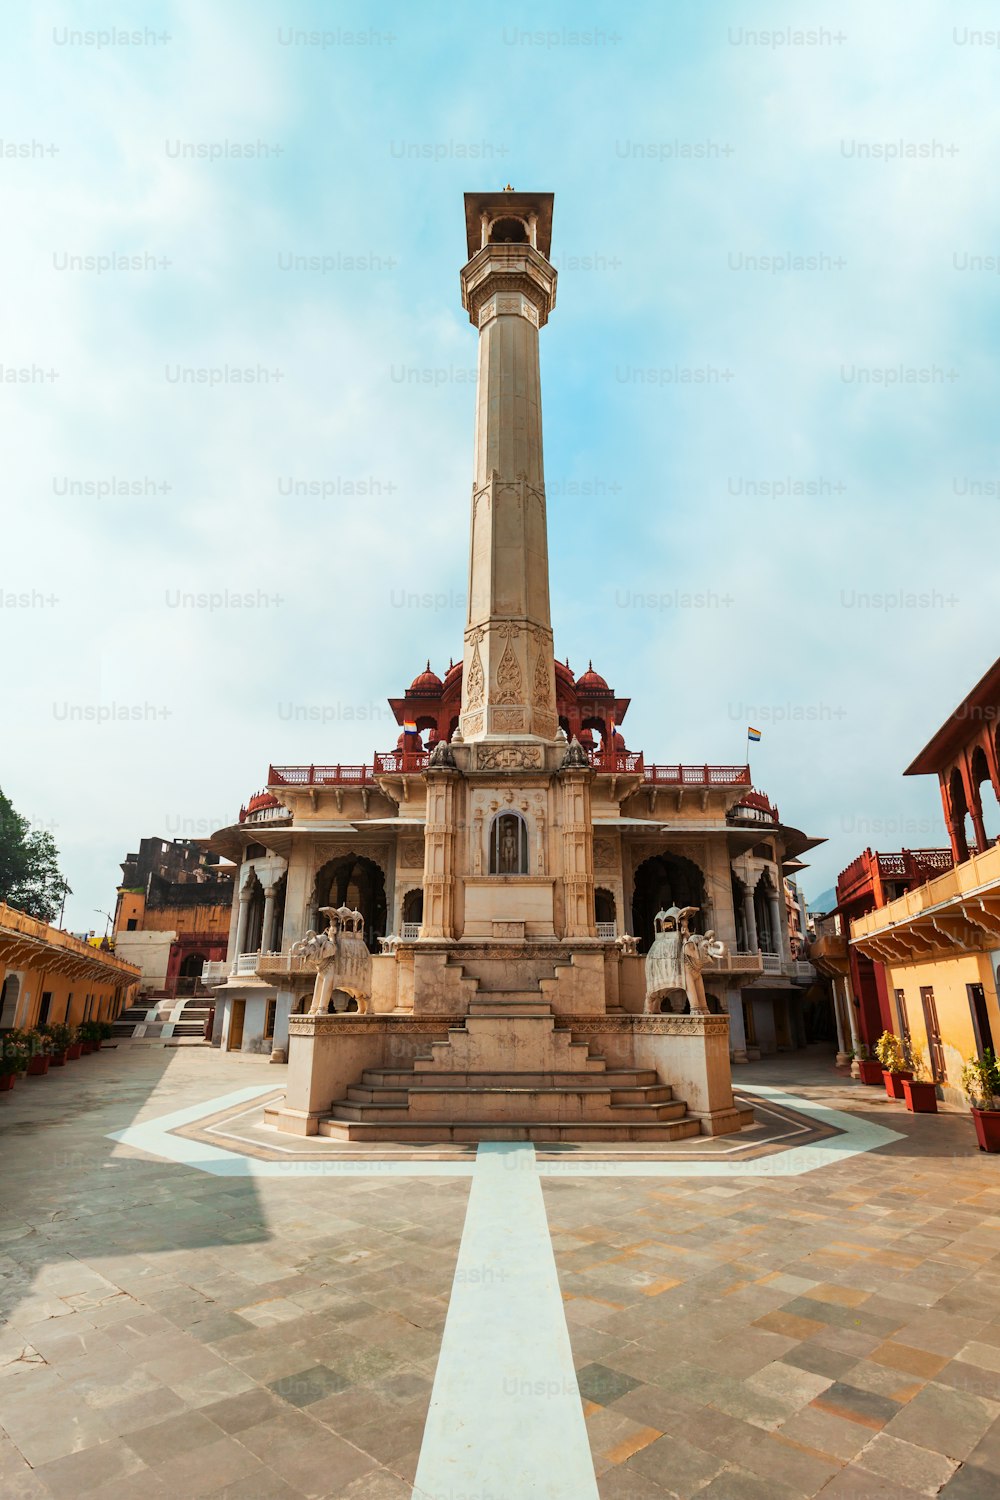 El Templo Jainista Digamber o Soniji Ki Nasiyan es un templo jainista principal en la ciudad de Ajmer en el estado de Rajastán de la India